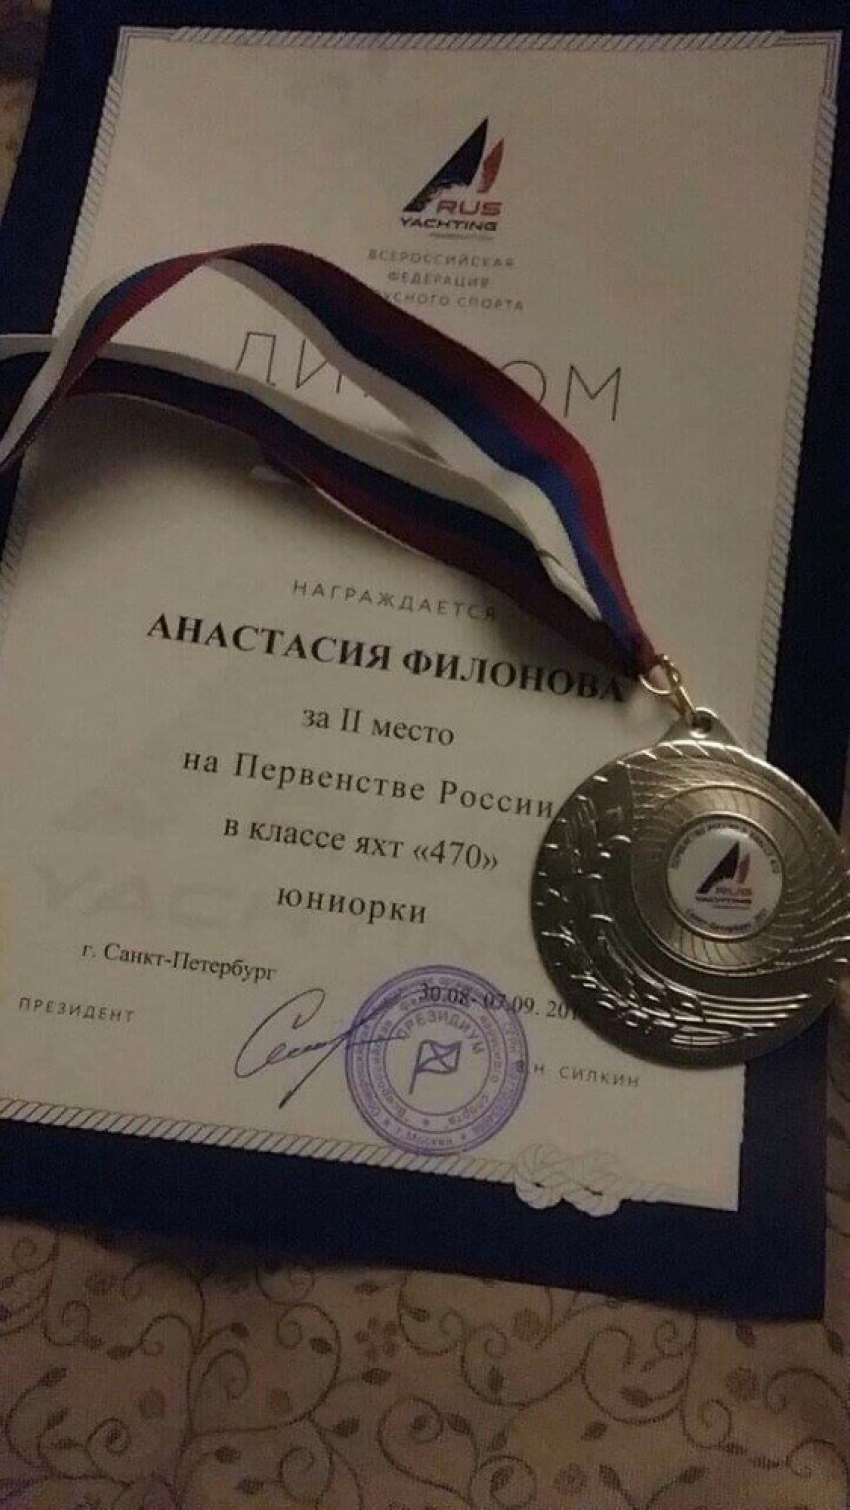 Новороссийская яхтсменка заняла второе место в Первенстве России в классе яхт «470"